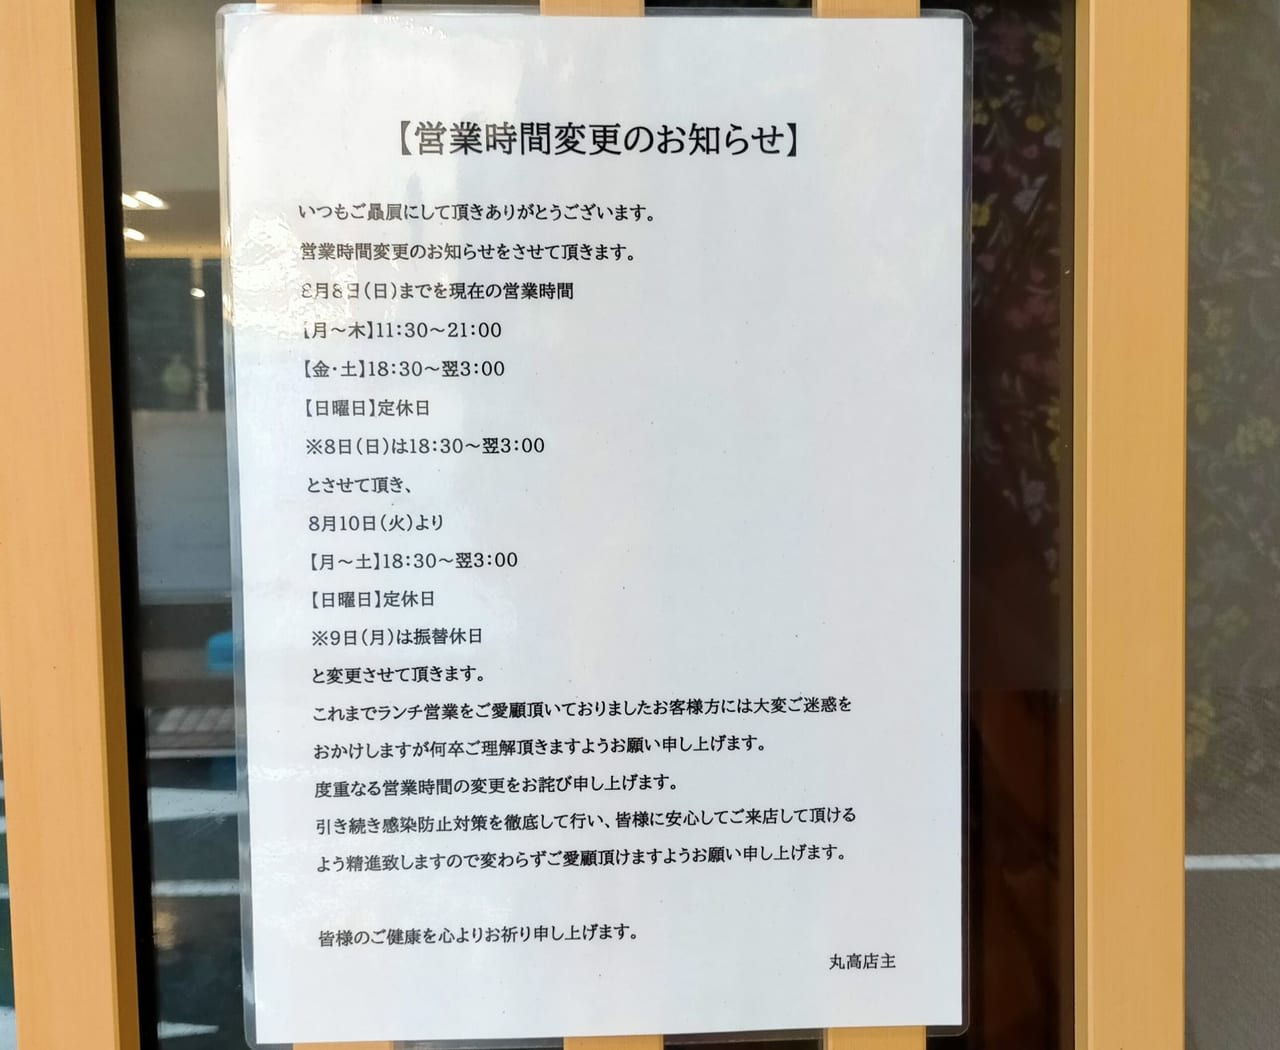 「ラーメン居酒屋丸高」のランチ営業終了のお知らせ